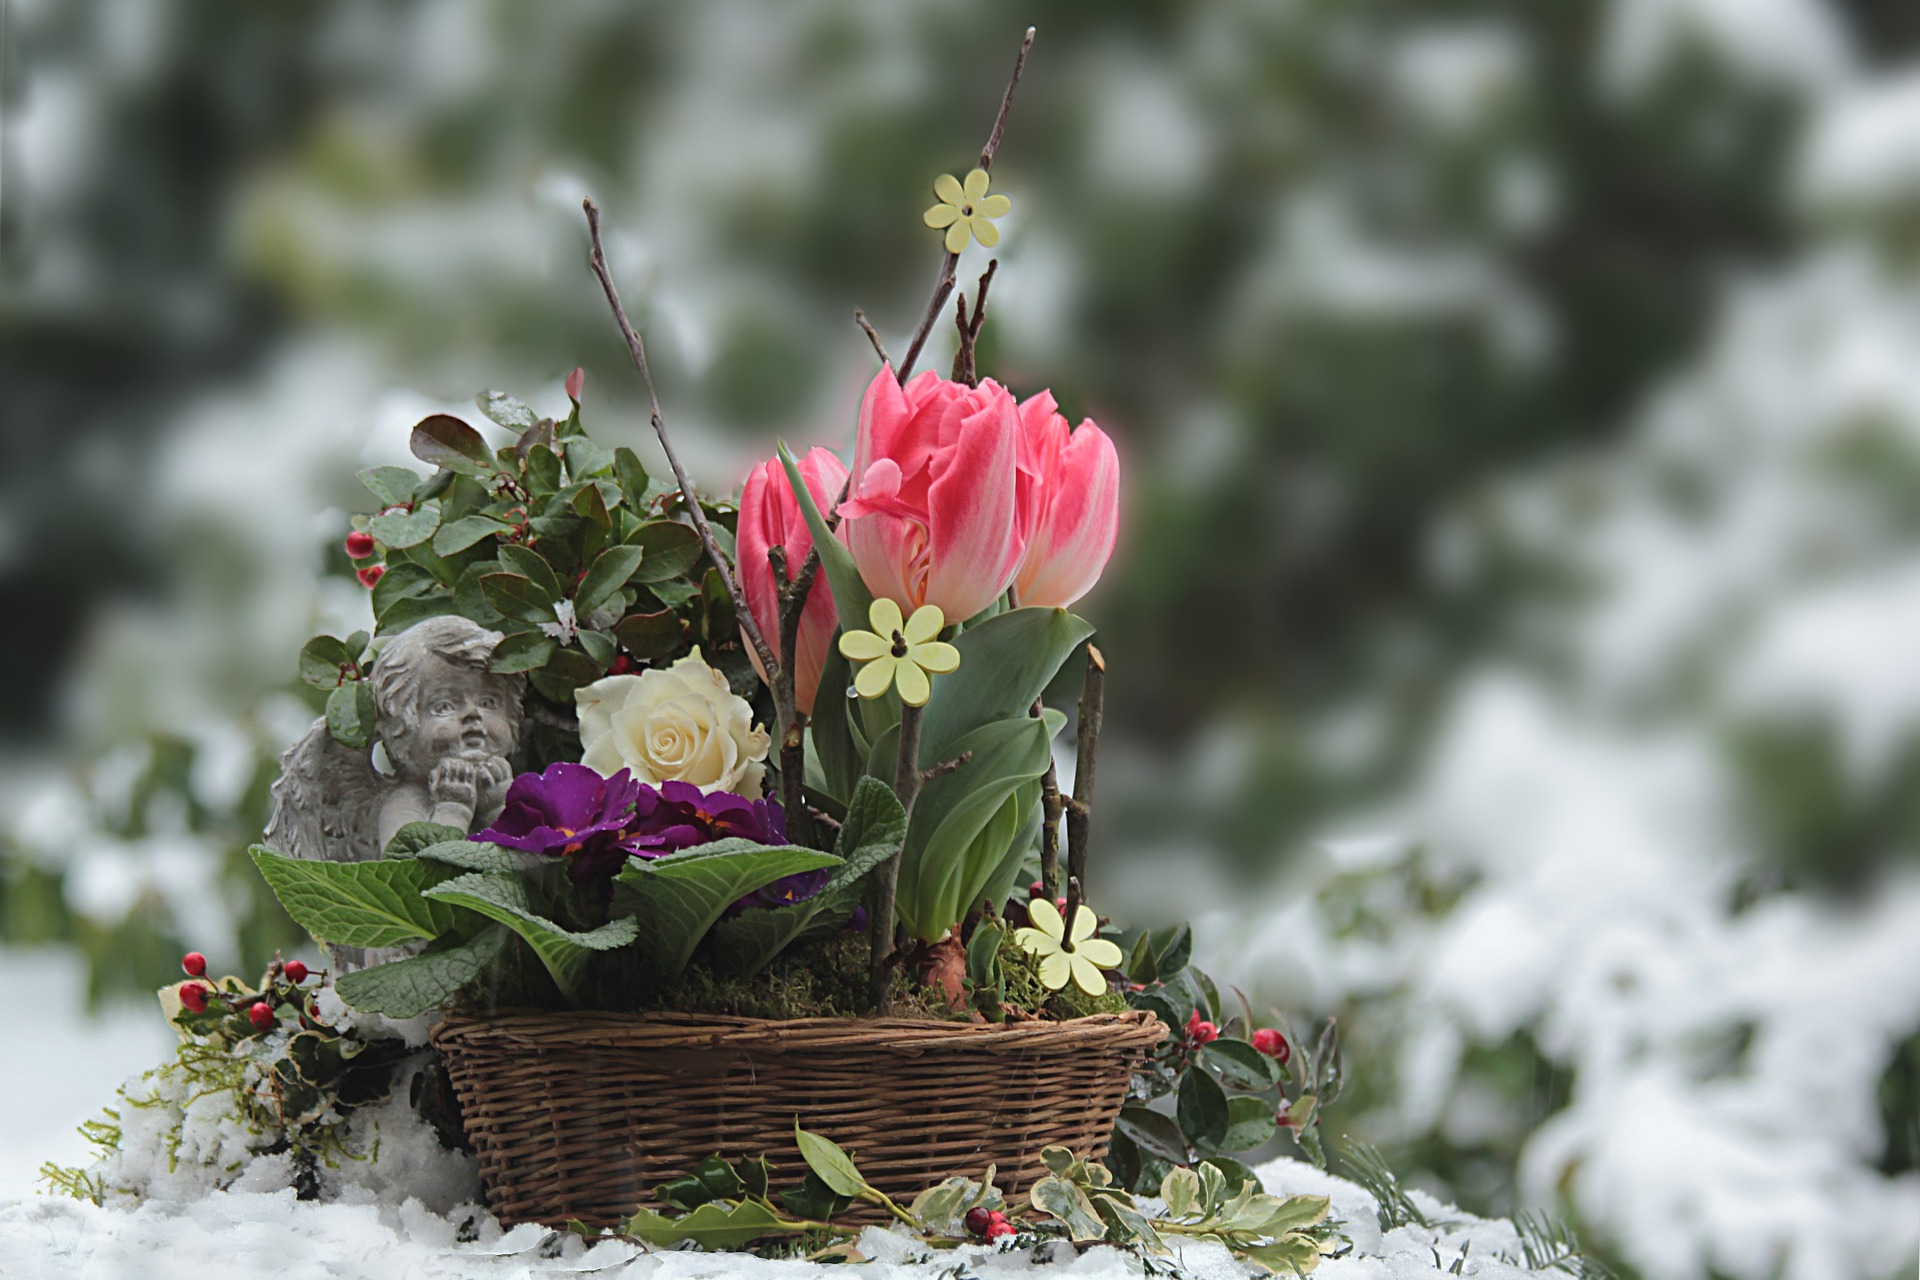 flowers in a basket in winter